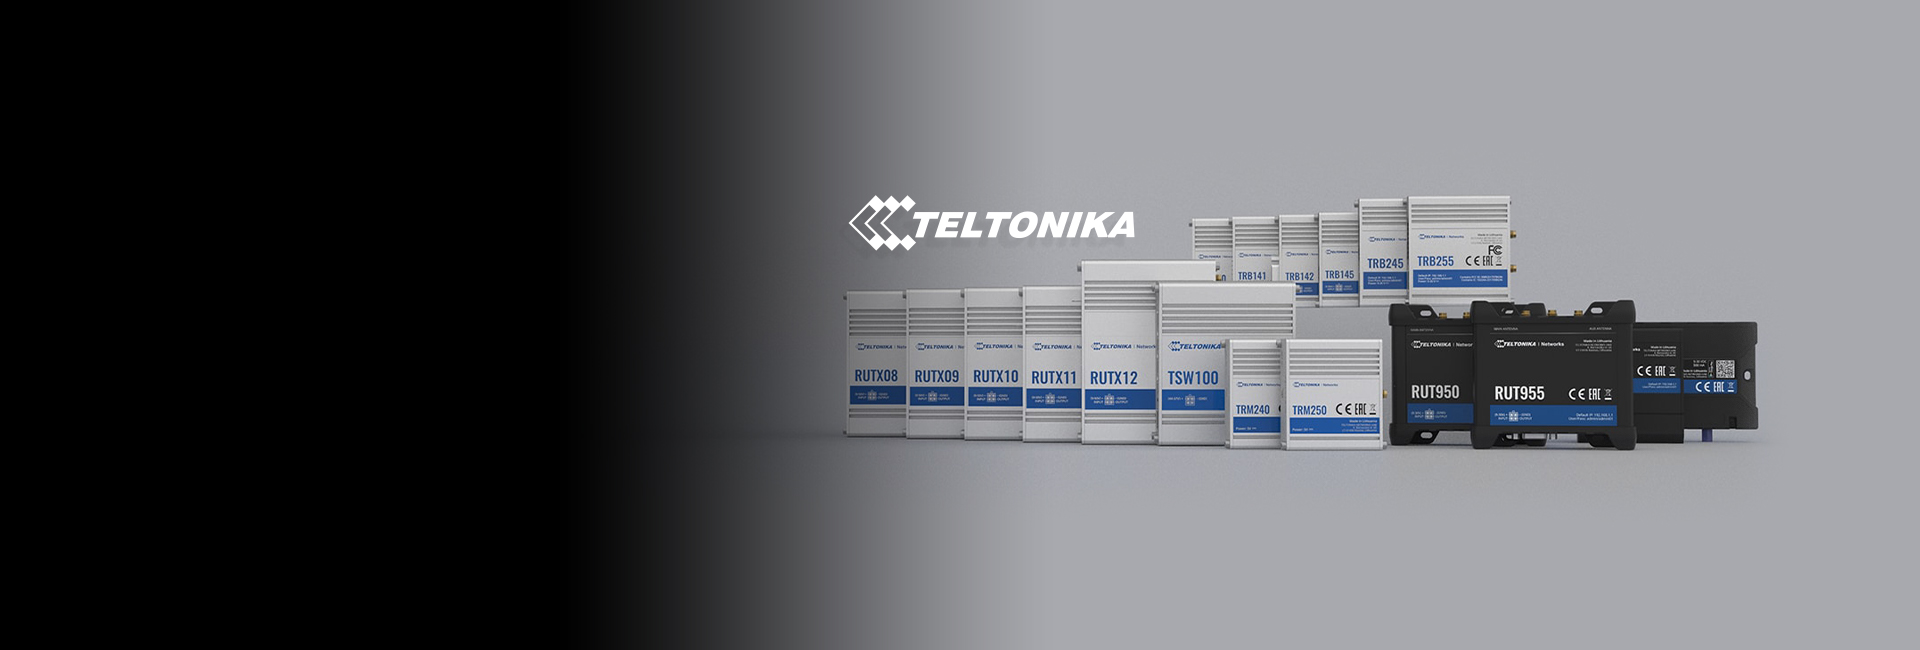 Teltonika<br>Knowledge Base